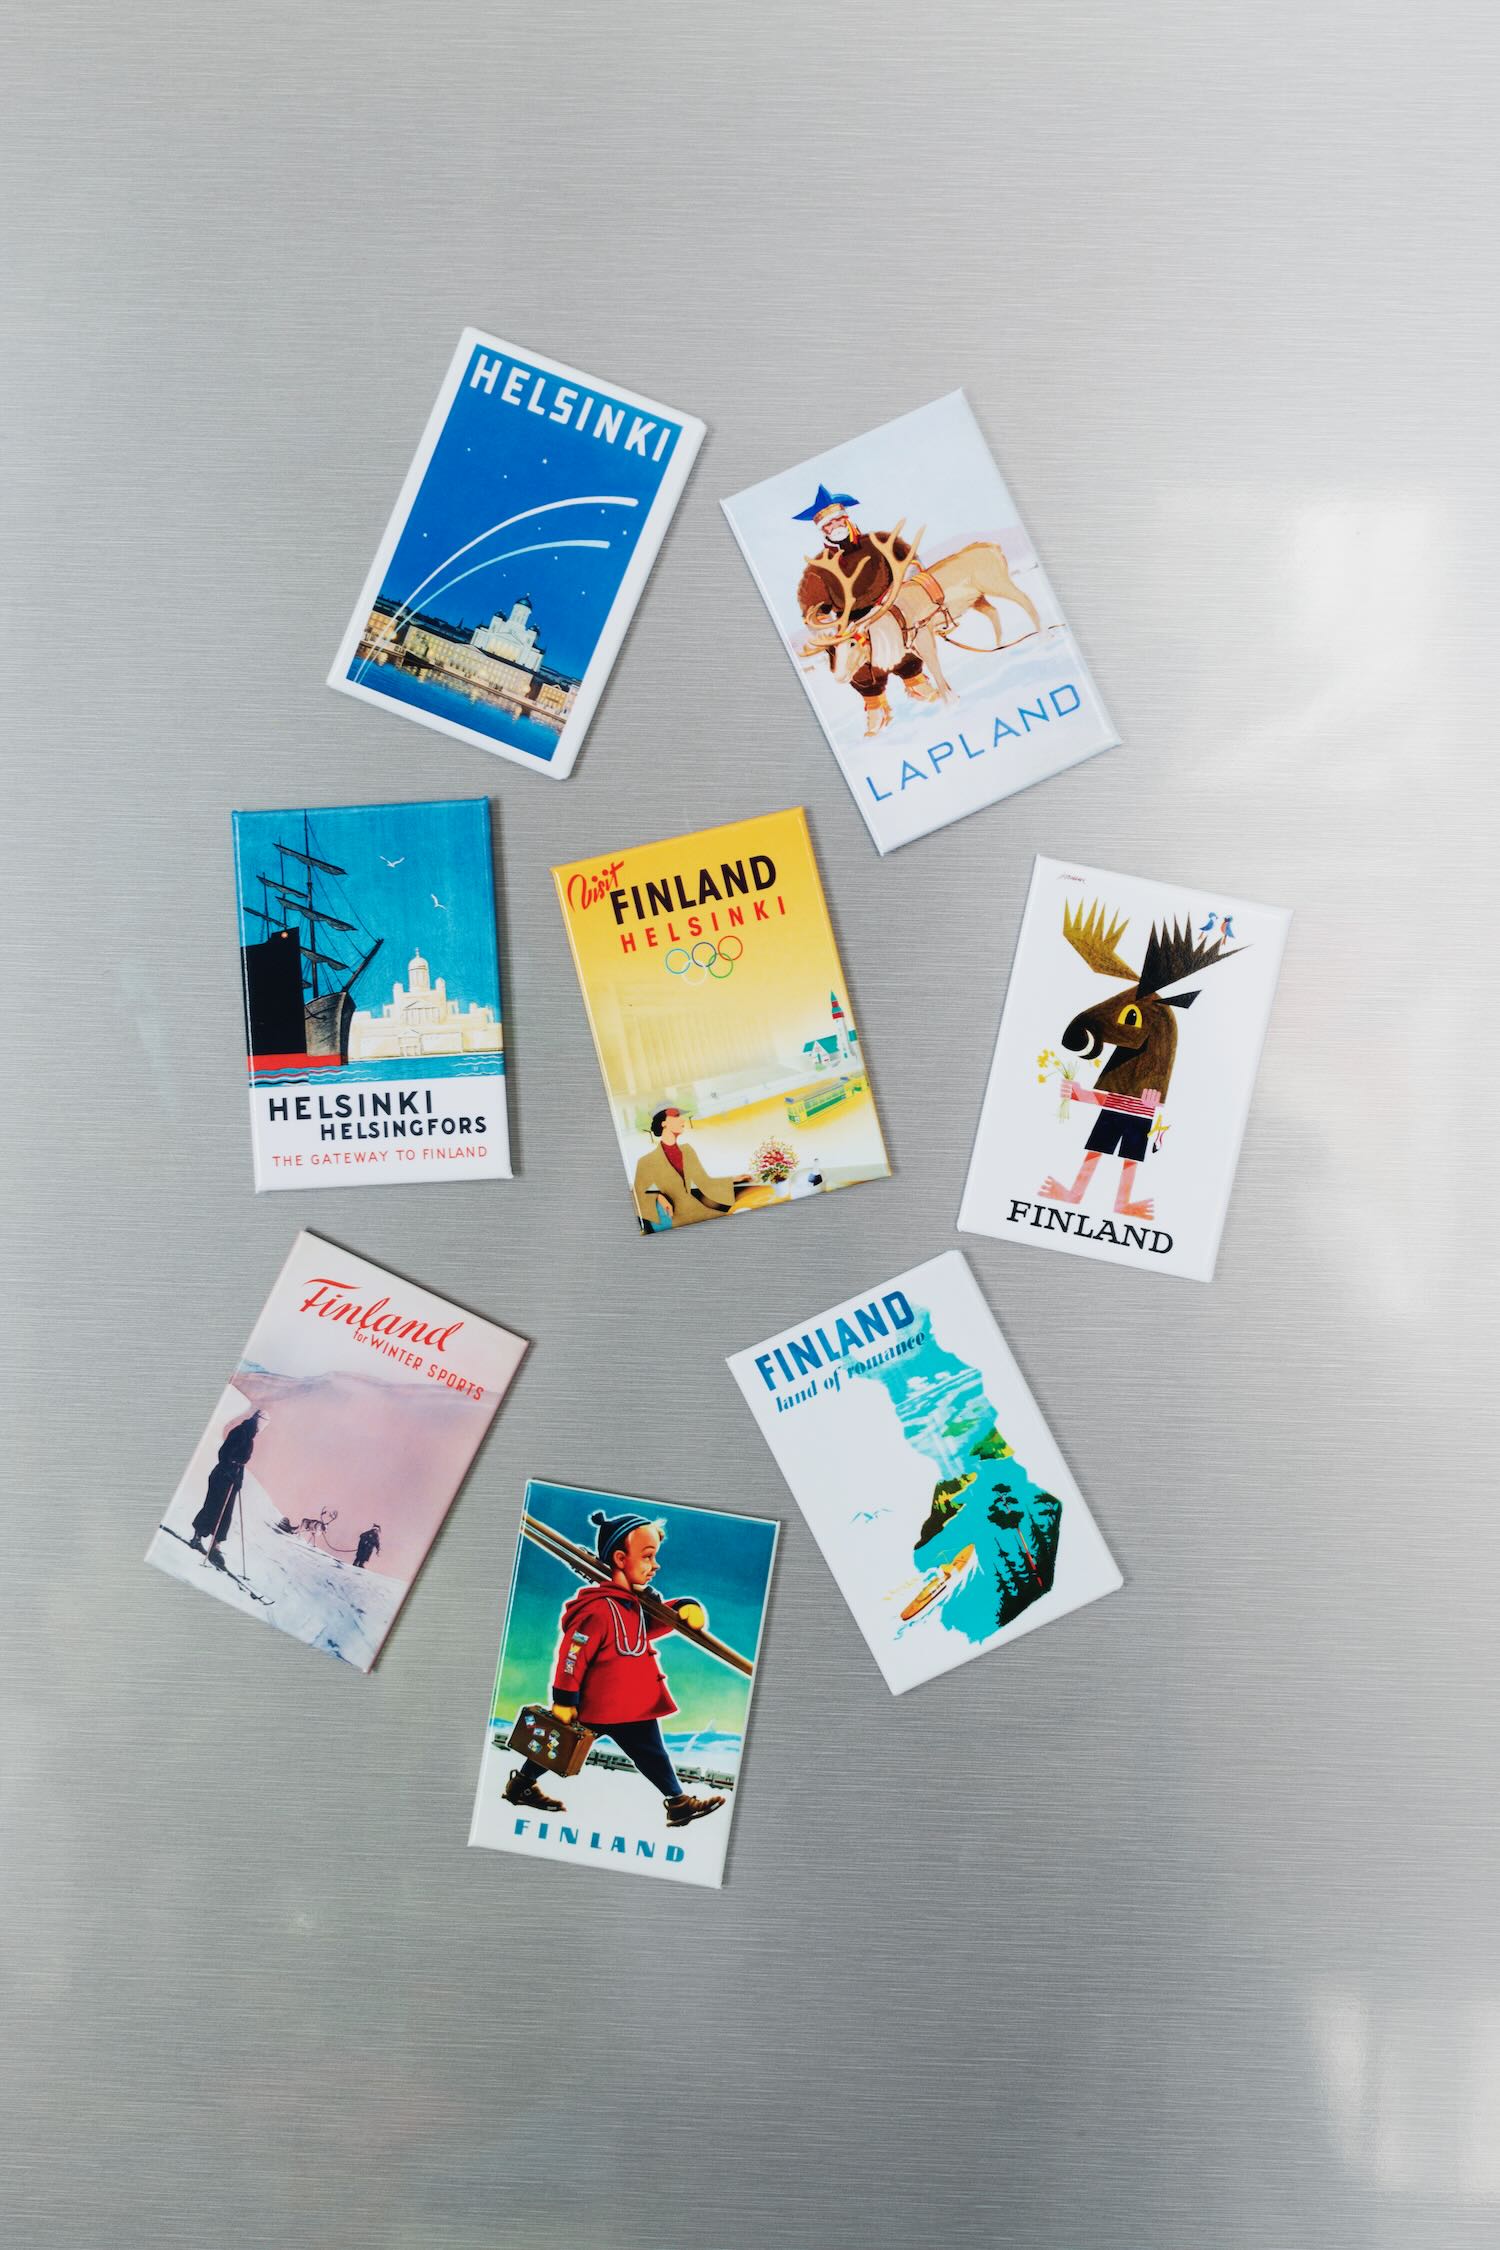 Sisustuskuva suomalaisesta matkajulisteesta painettu postikorttina, nimeltään “Helsinki - Capital of Finland” painettuna jääkaappimagneetille.